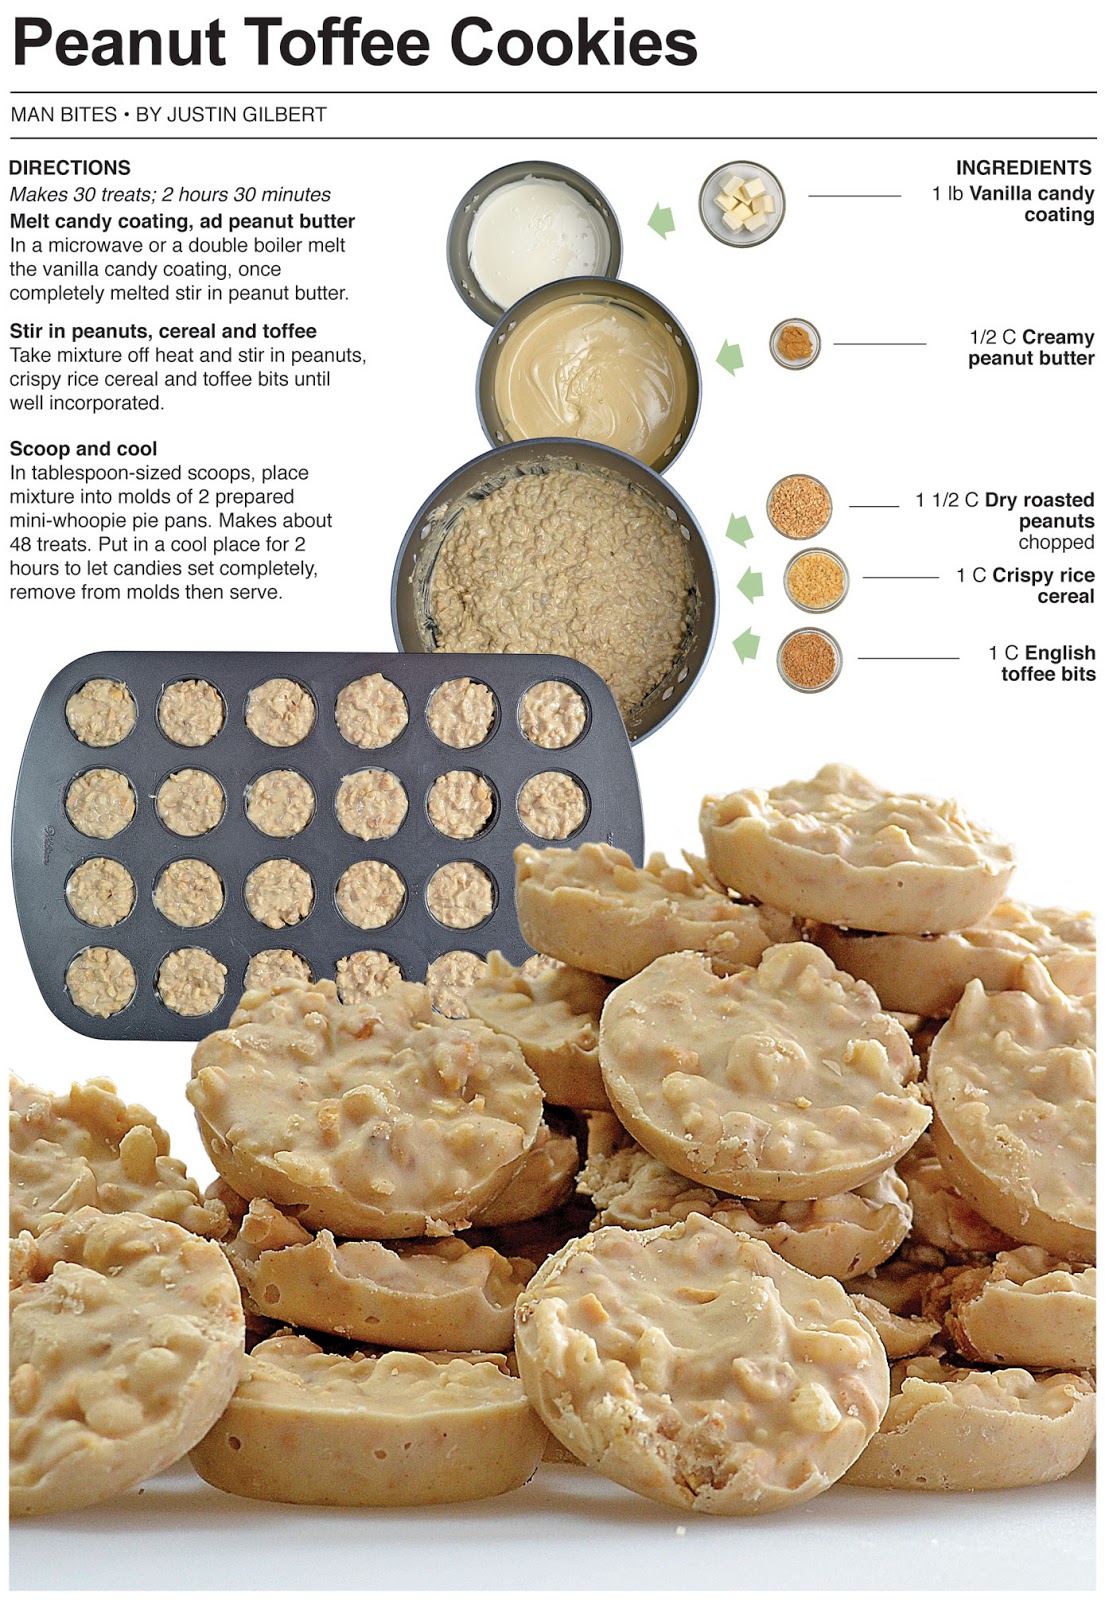 Behind the Bites: Peanut Toffee Cookies